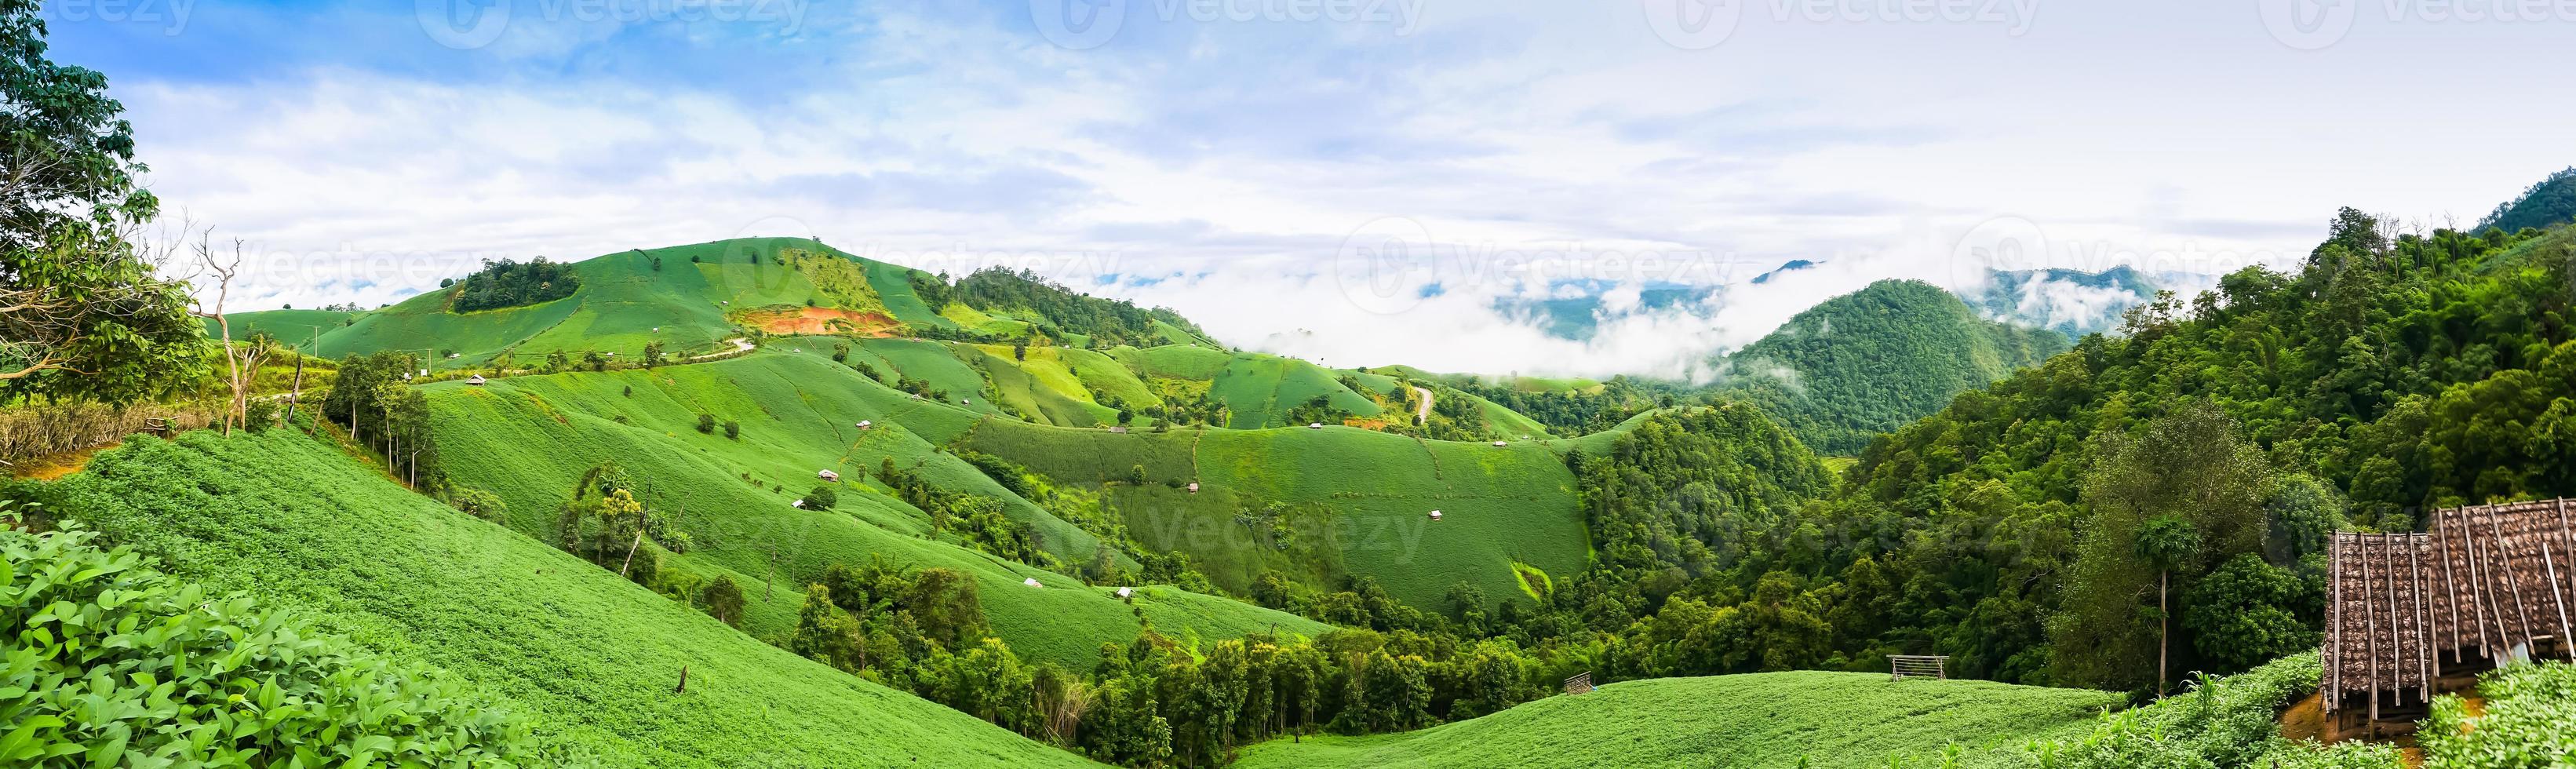 lussureggianti montagne verdi foto